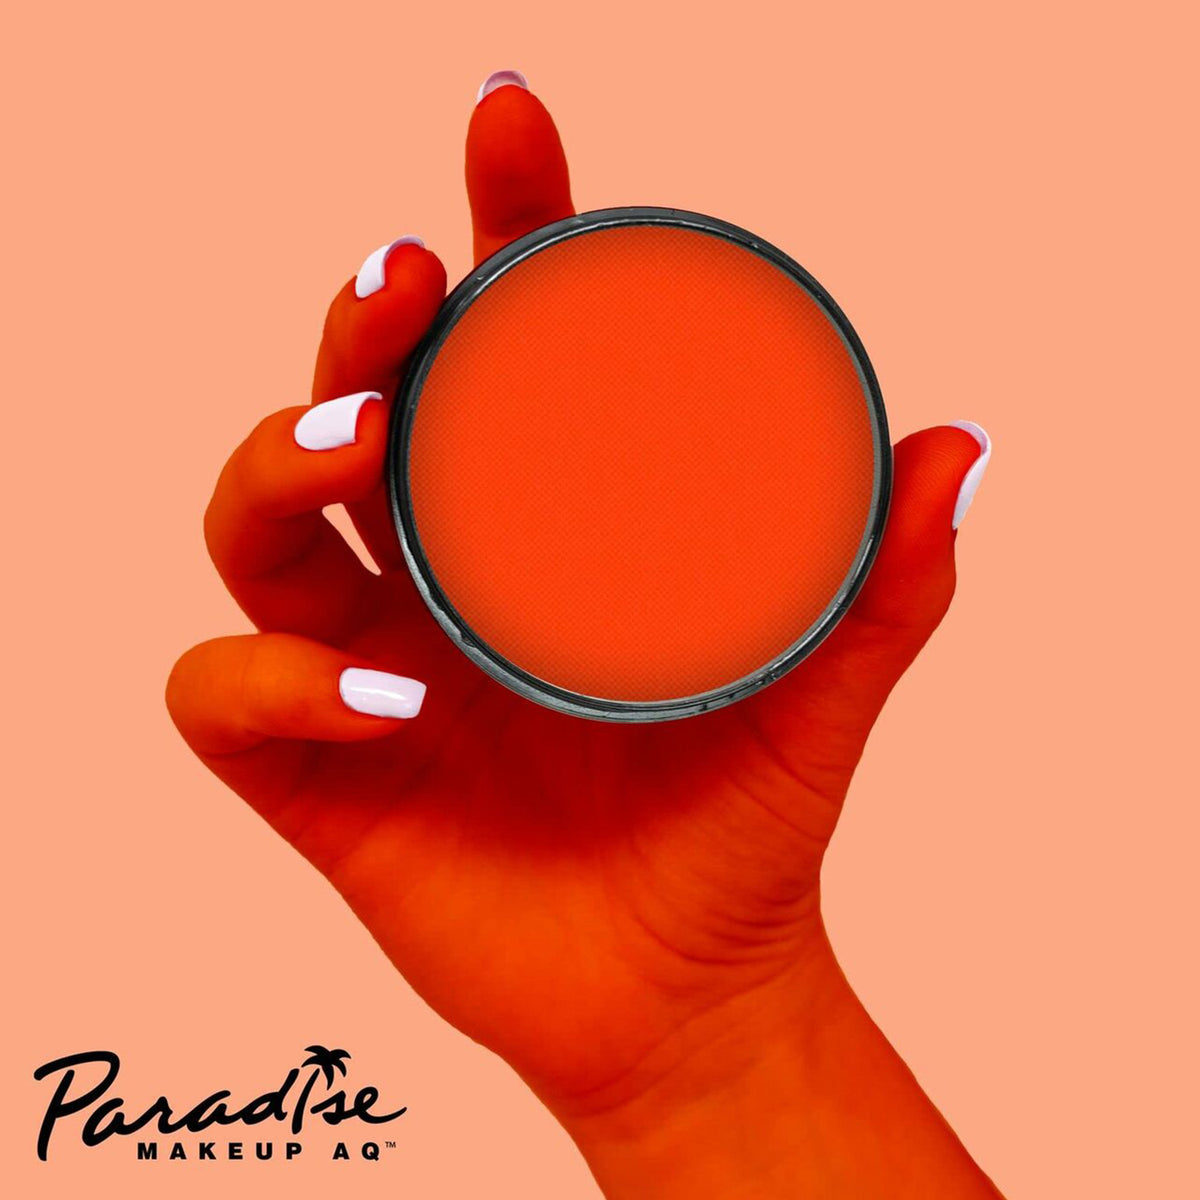 Paradise AQ Face Paint - Super Nova/Neon Orange (1.4 oz/ 40 gm)